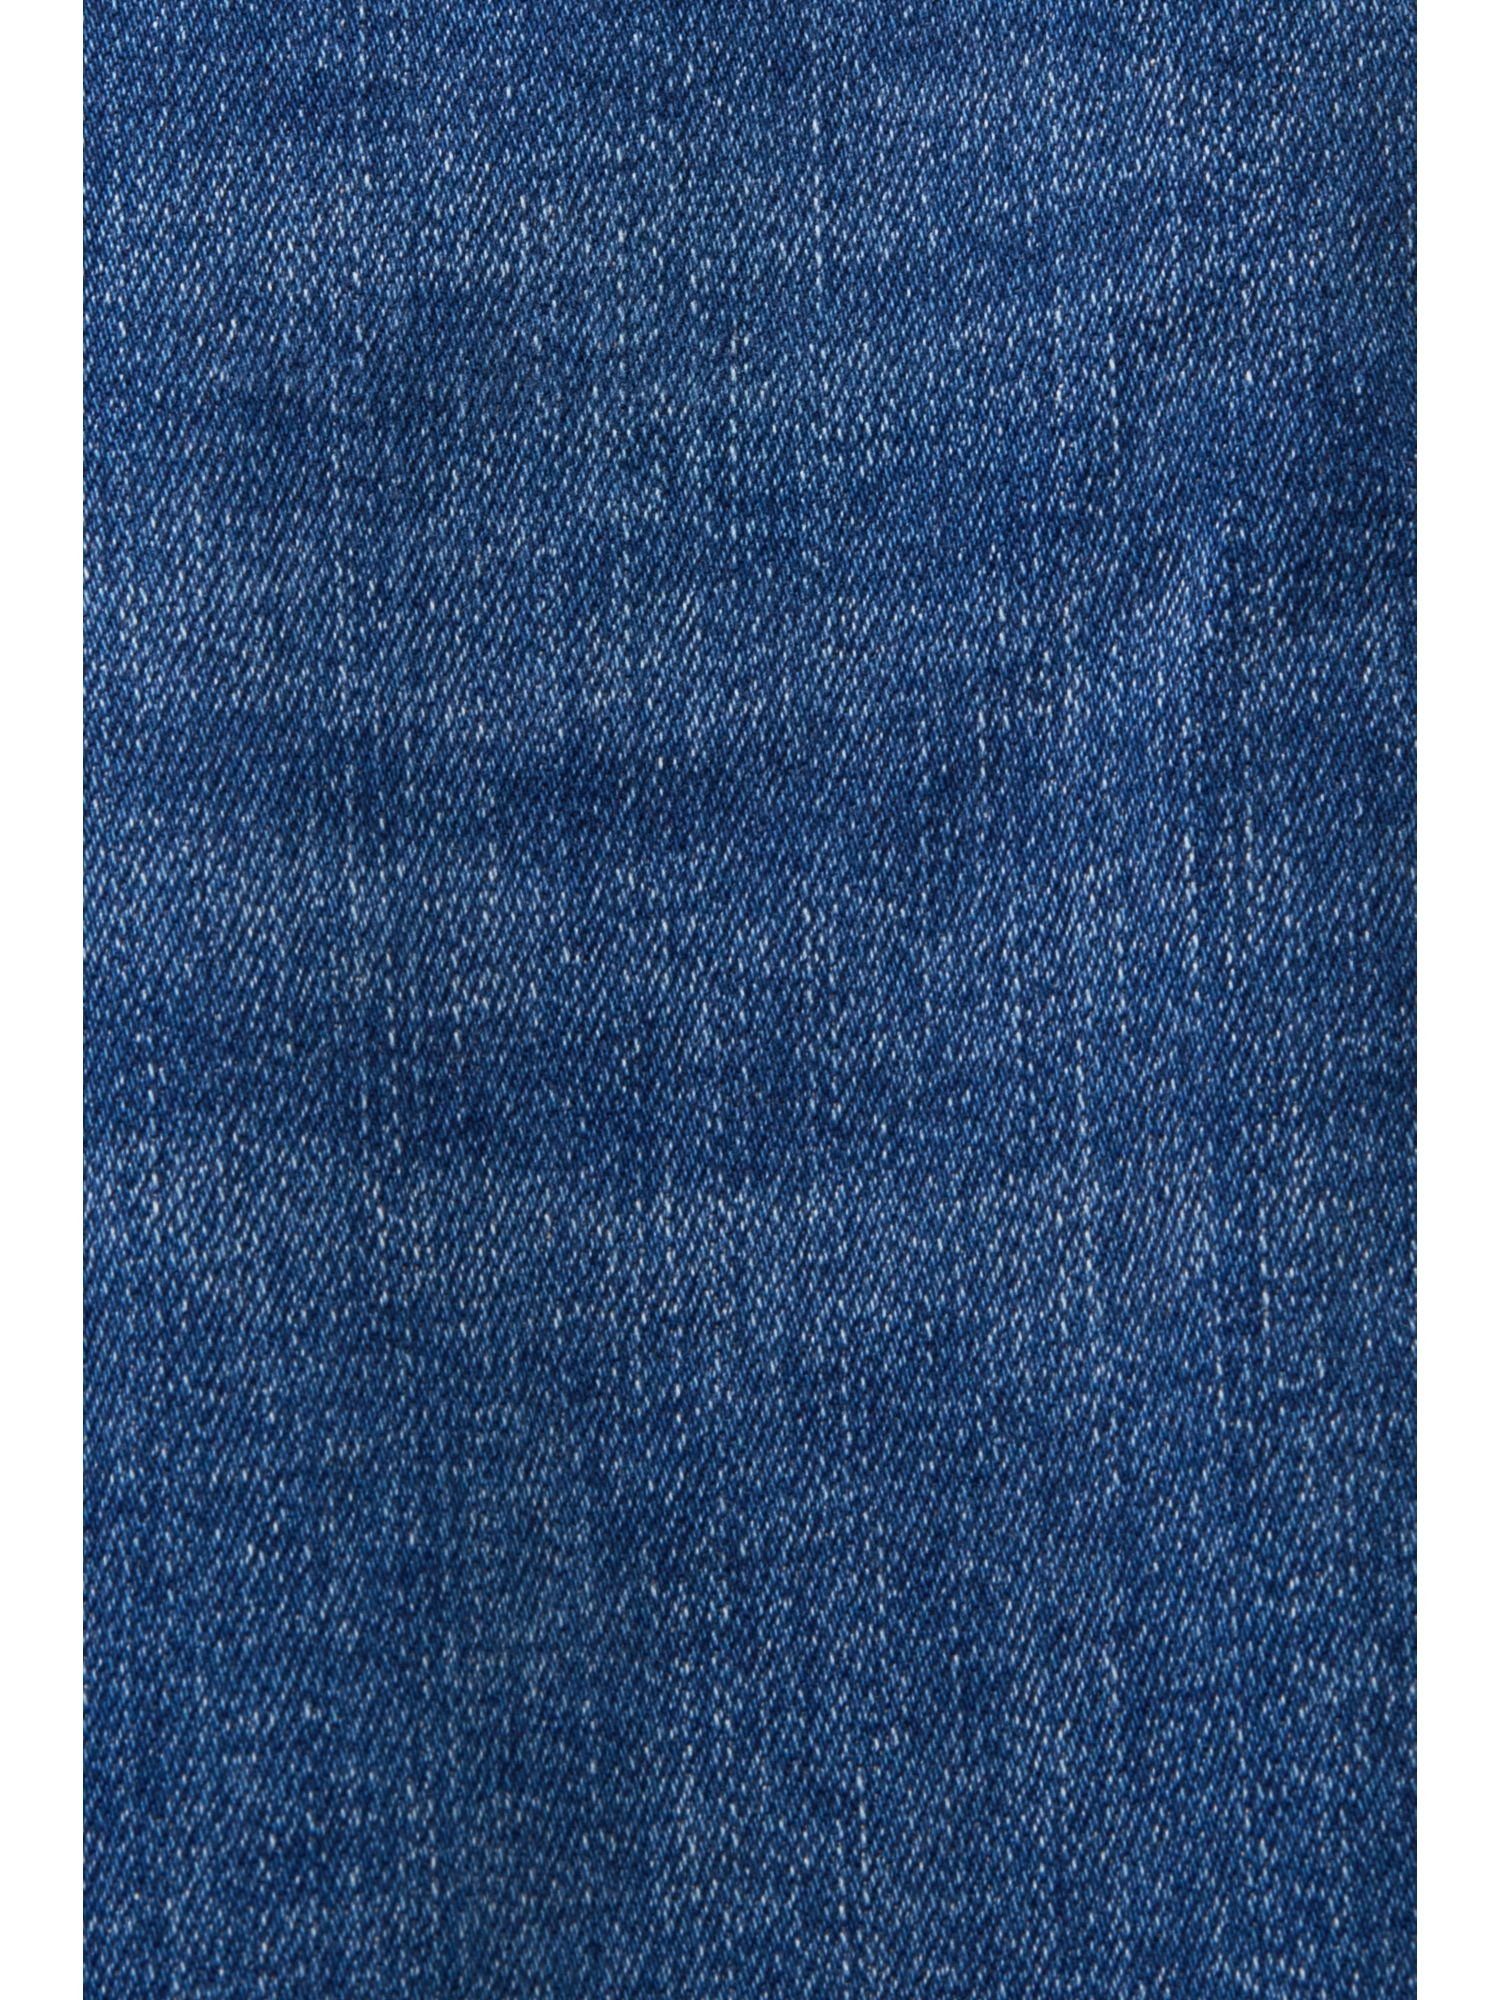 Fit Esprit BLUE MEDIUM Stretchjeans Slim-fit-Jeans Slim WASHED